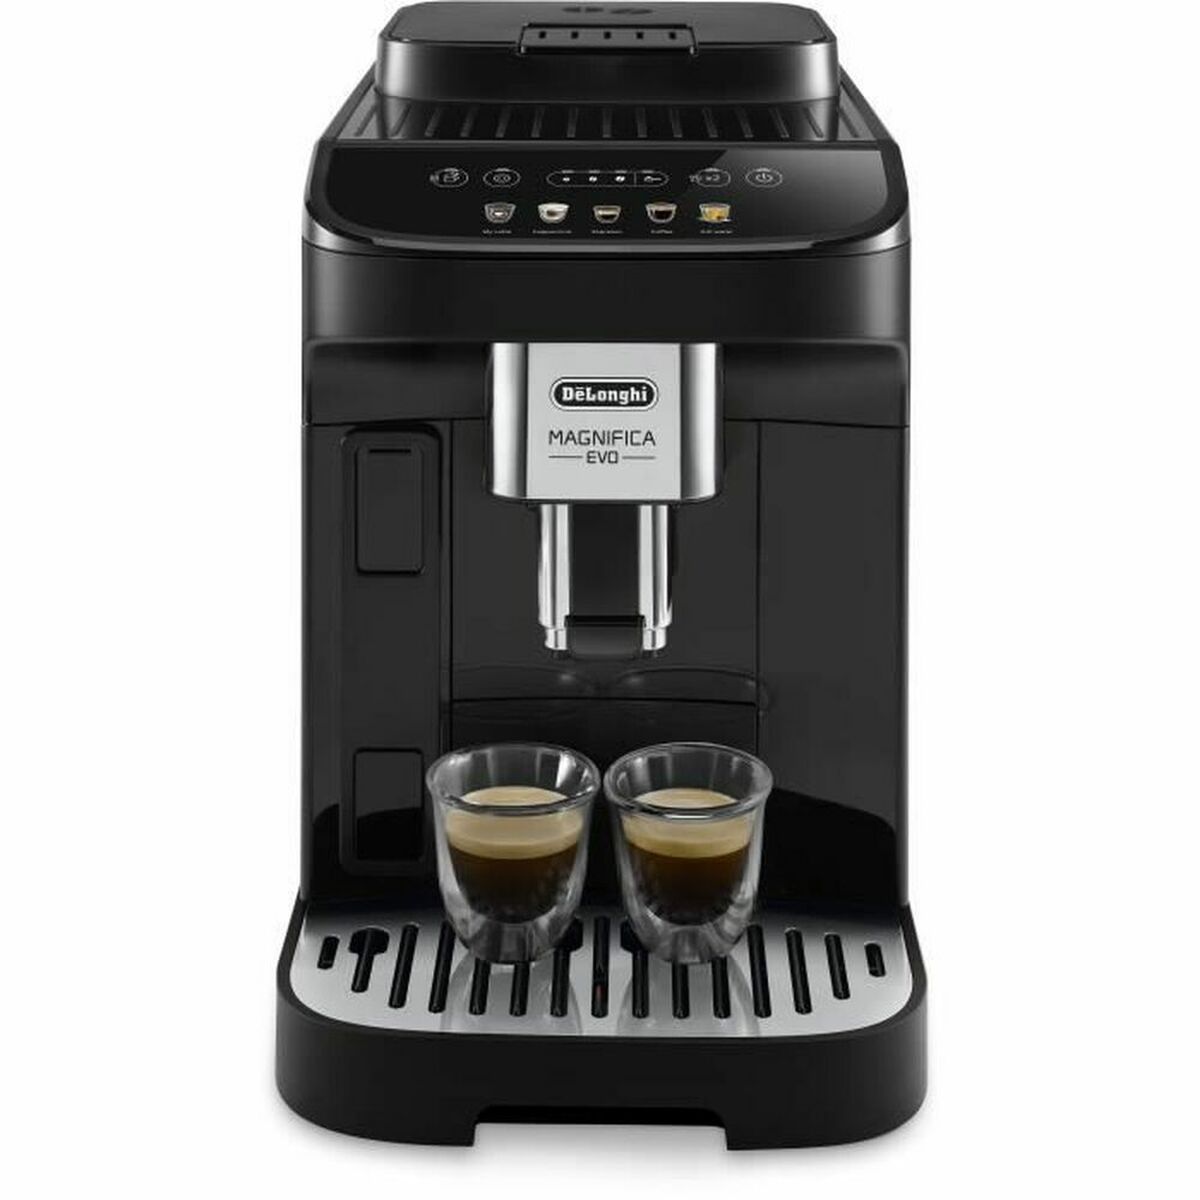 Superautomatische Kaffeemaschine DeLonghi MAGNIFICA EVO 1,4 L Schwarz - CA International 